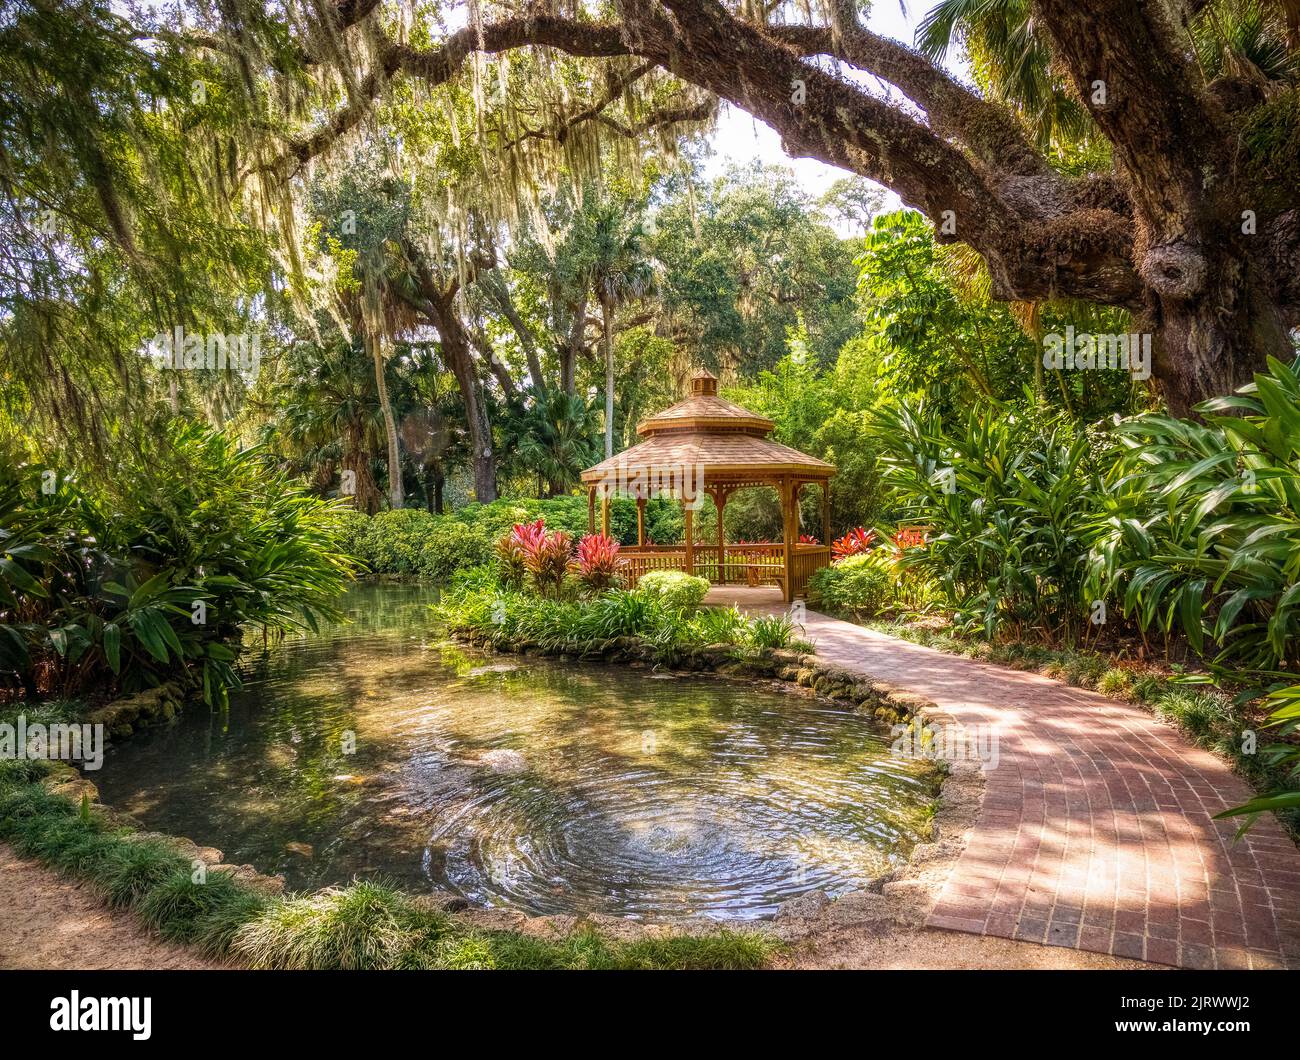 Teich im Washington Oaks Historic District von Washington Oaks Gardens State Park in Palm Coast Florida USA Stockfoto